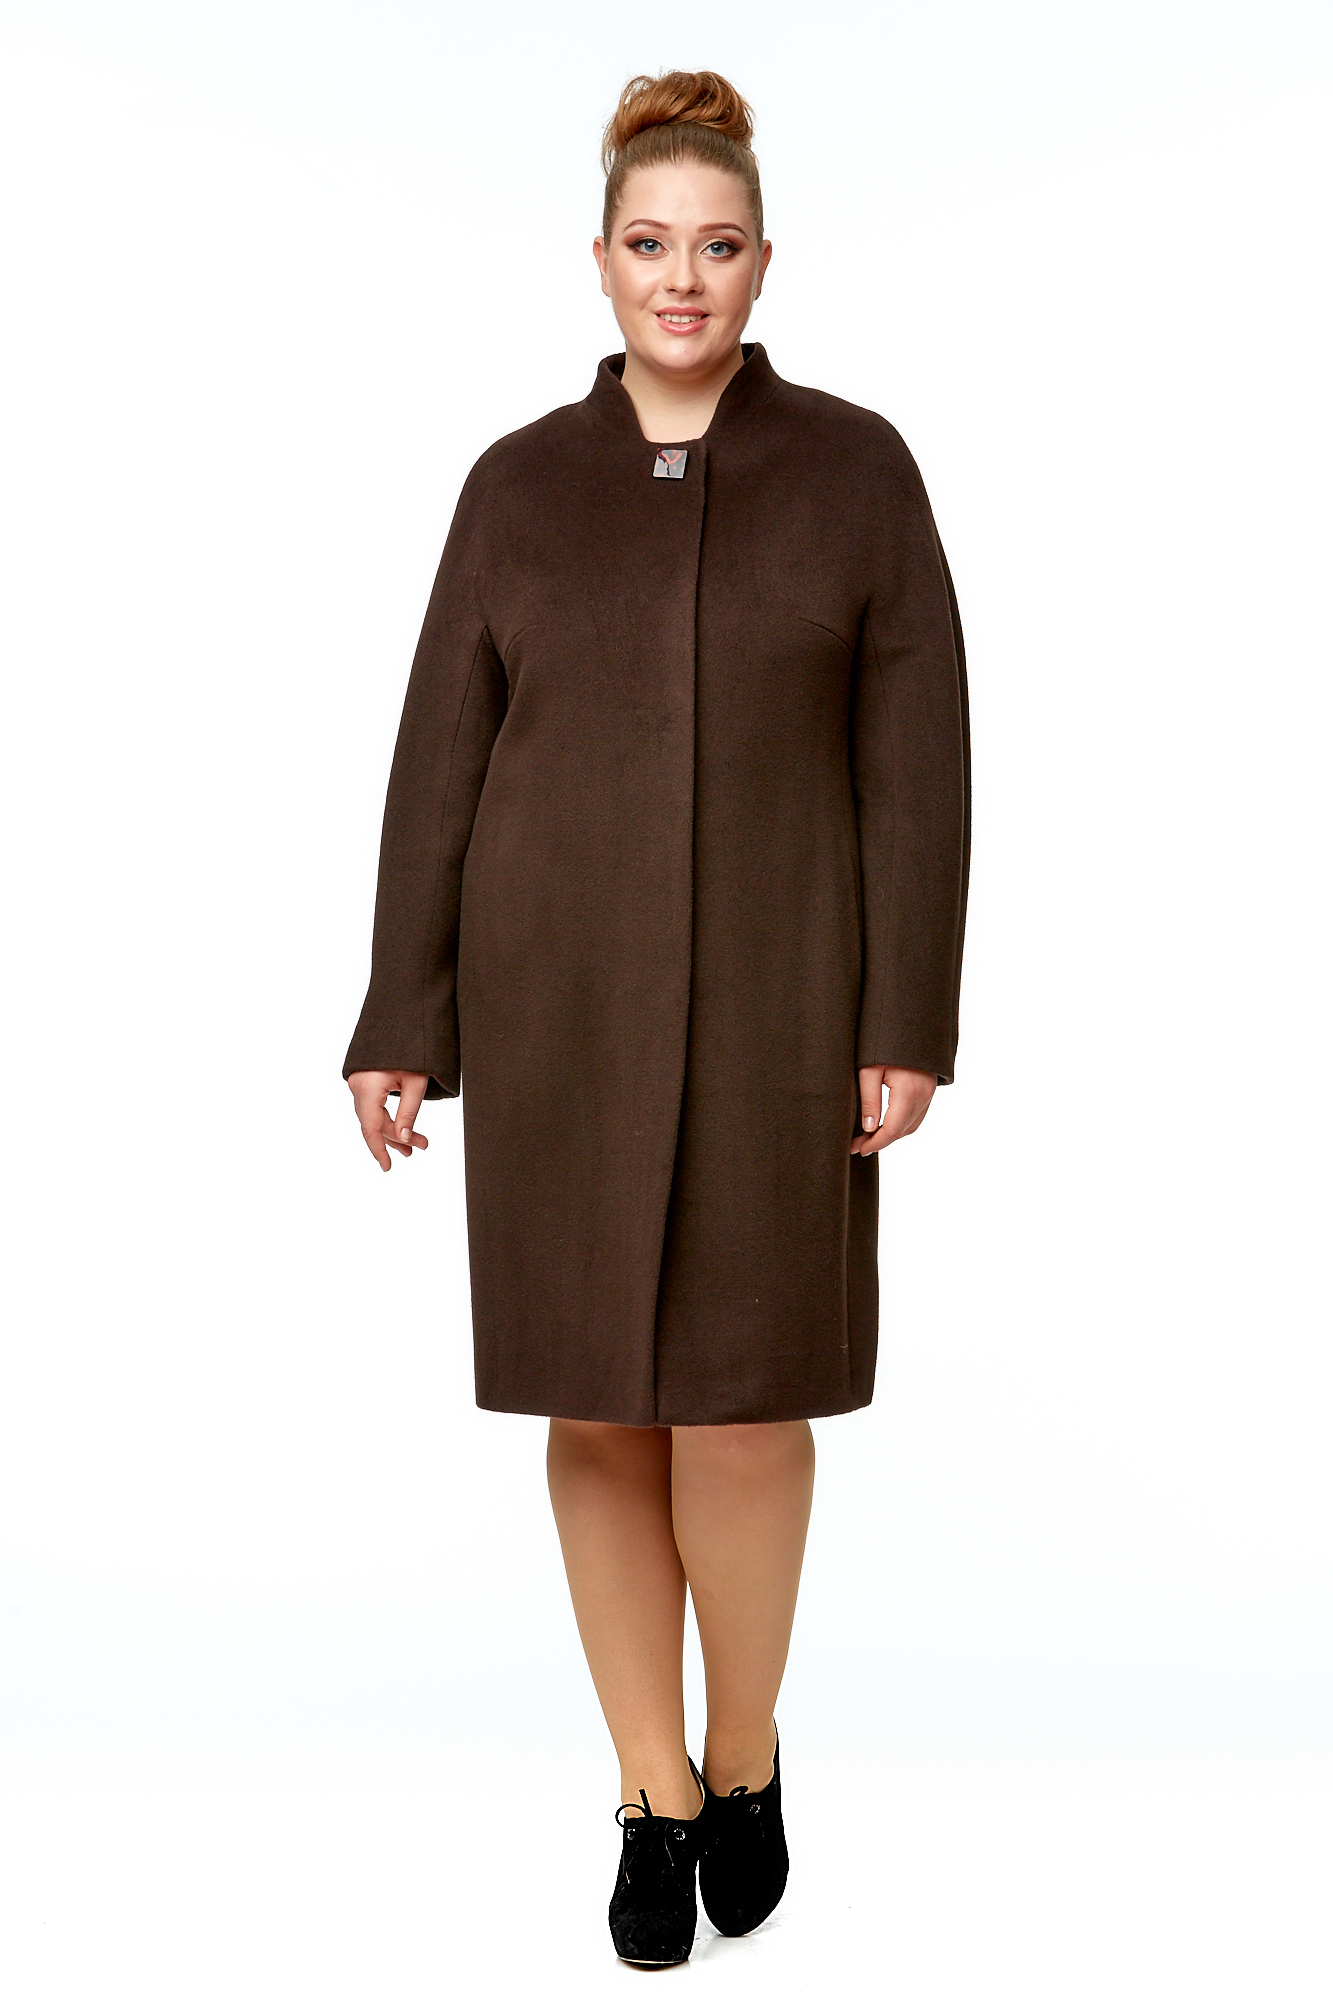 

Пальто женское МОСМЕХА 8002006 коричневое 48 RU, Коричневый, 8002006